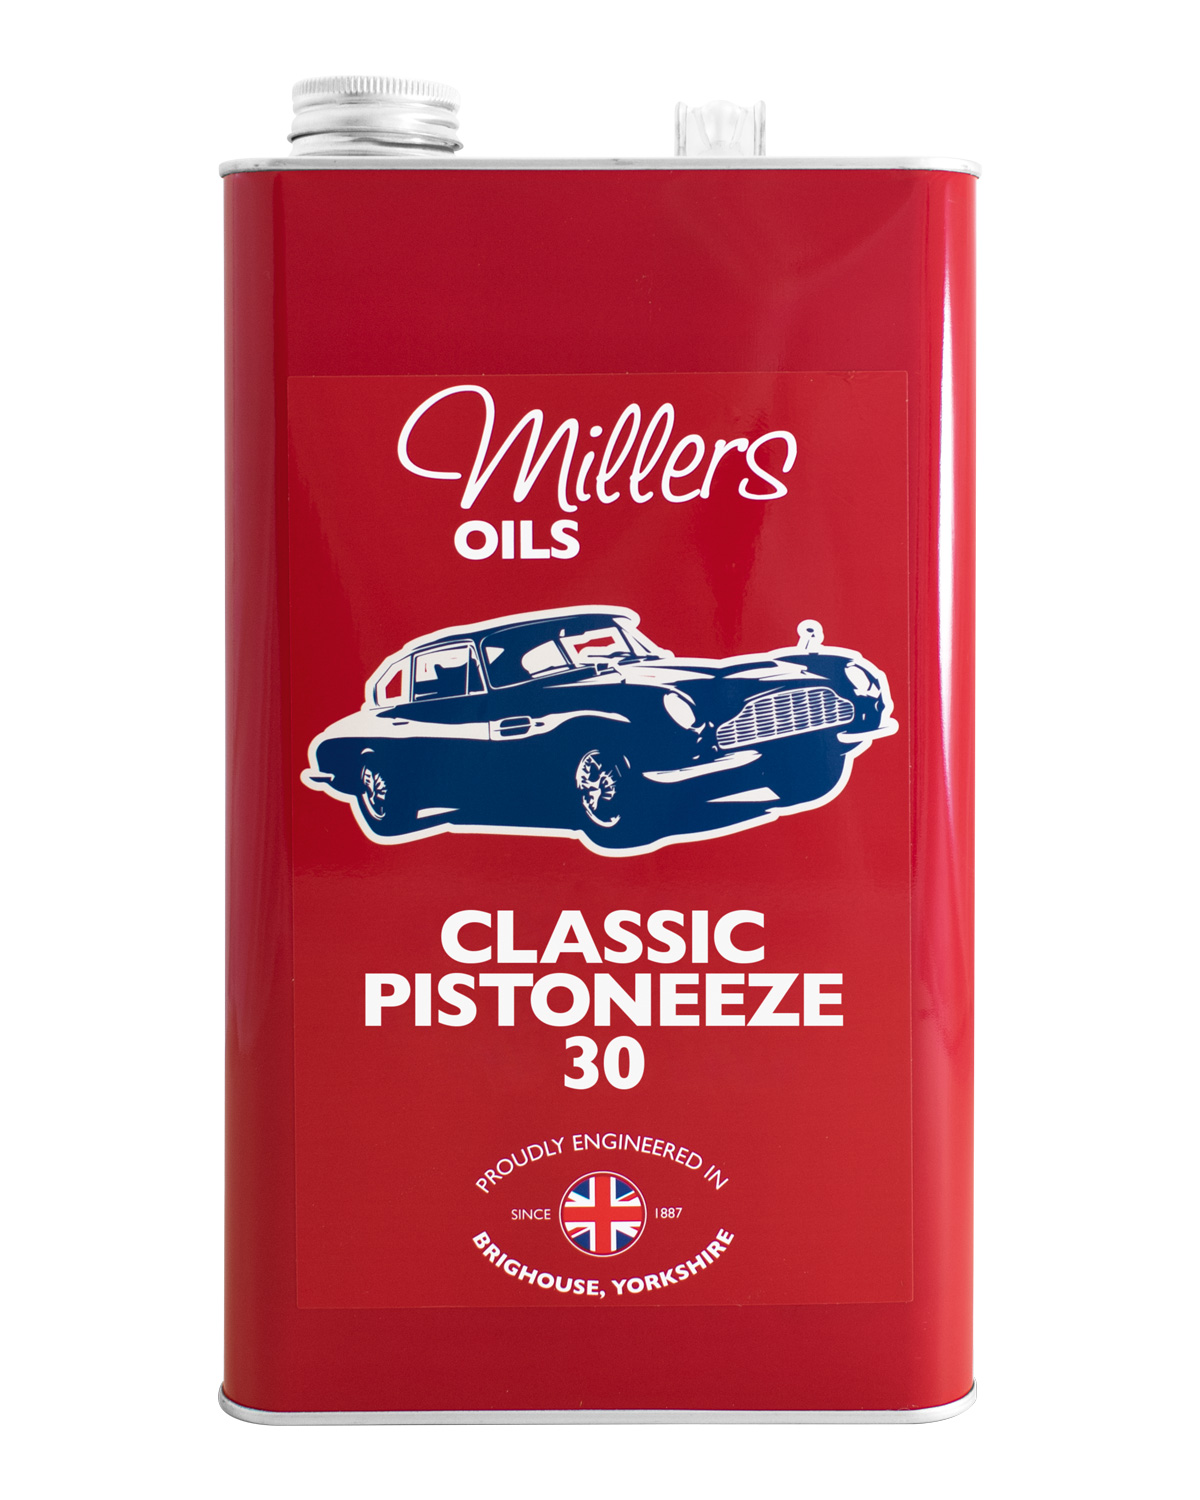 Millers Oils Classic Pistoneeze 30, 5 Liter